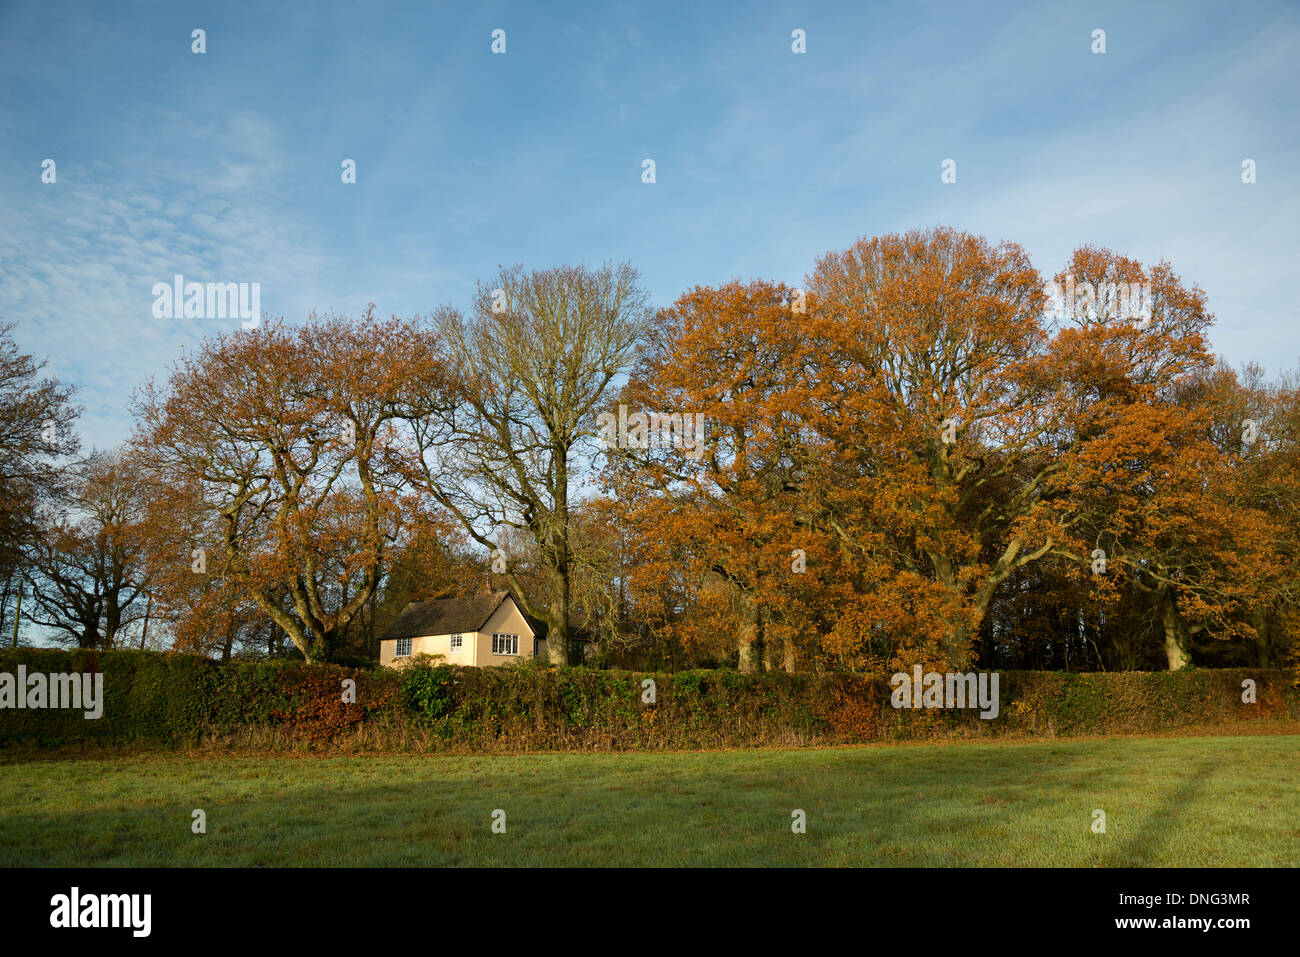 Il tardo autunno giornata soleggiata in Inghilterra rurale. Un campo in erba con alberi di quercia e lunga siepe. Casa immersa tra gli alberi. Blue sky. Foto Stock